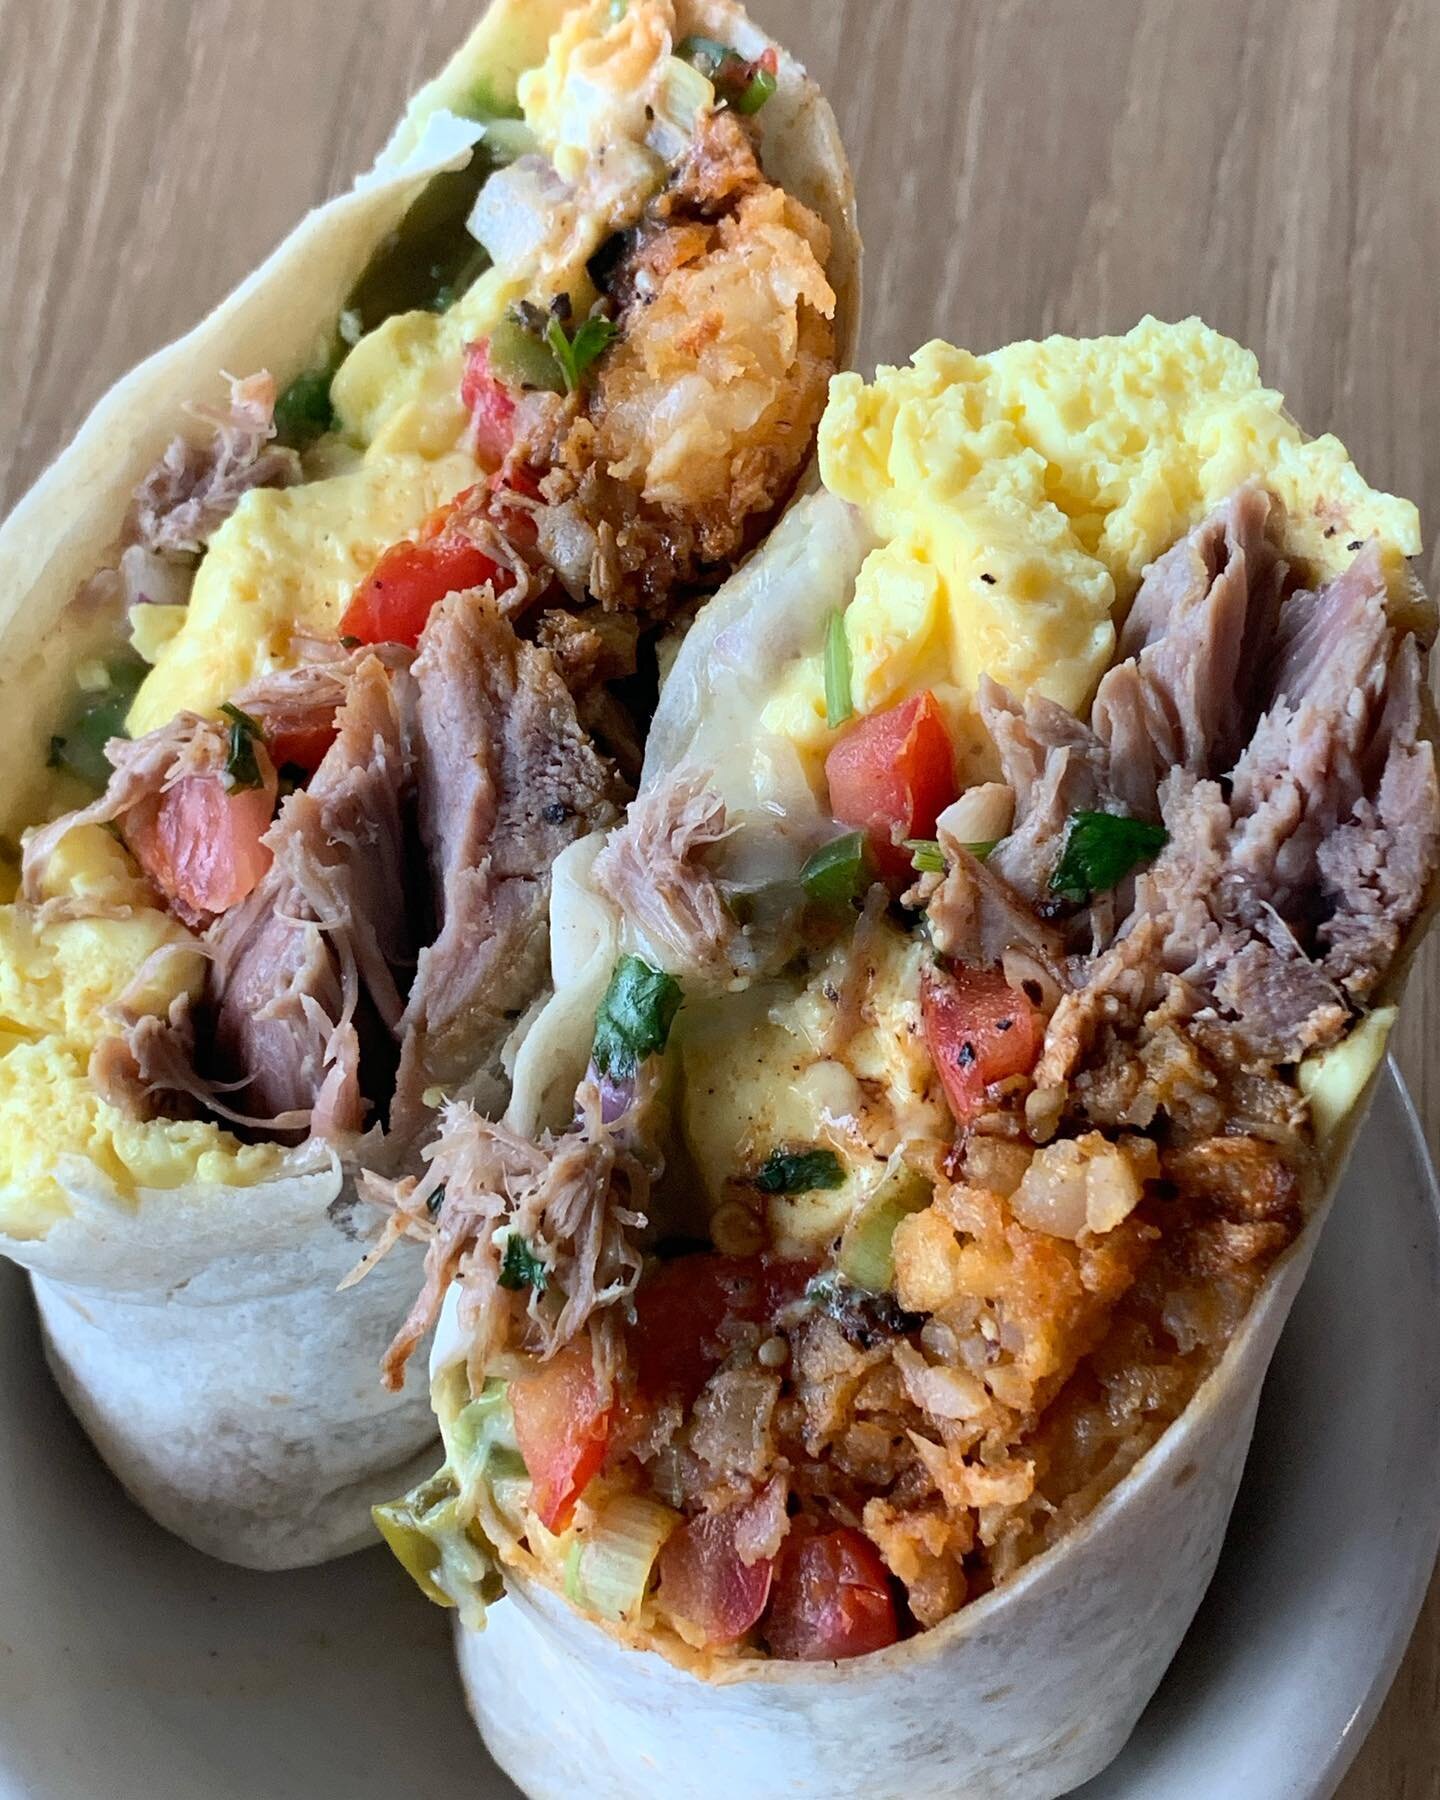 Breakfast Burrito with Carnitas. #micdrop #napabreakfast #goldenbagelnapa #breakfastburrito #guajillo #carnitas #napalocals #shoplocal